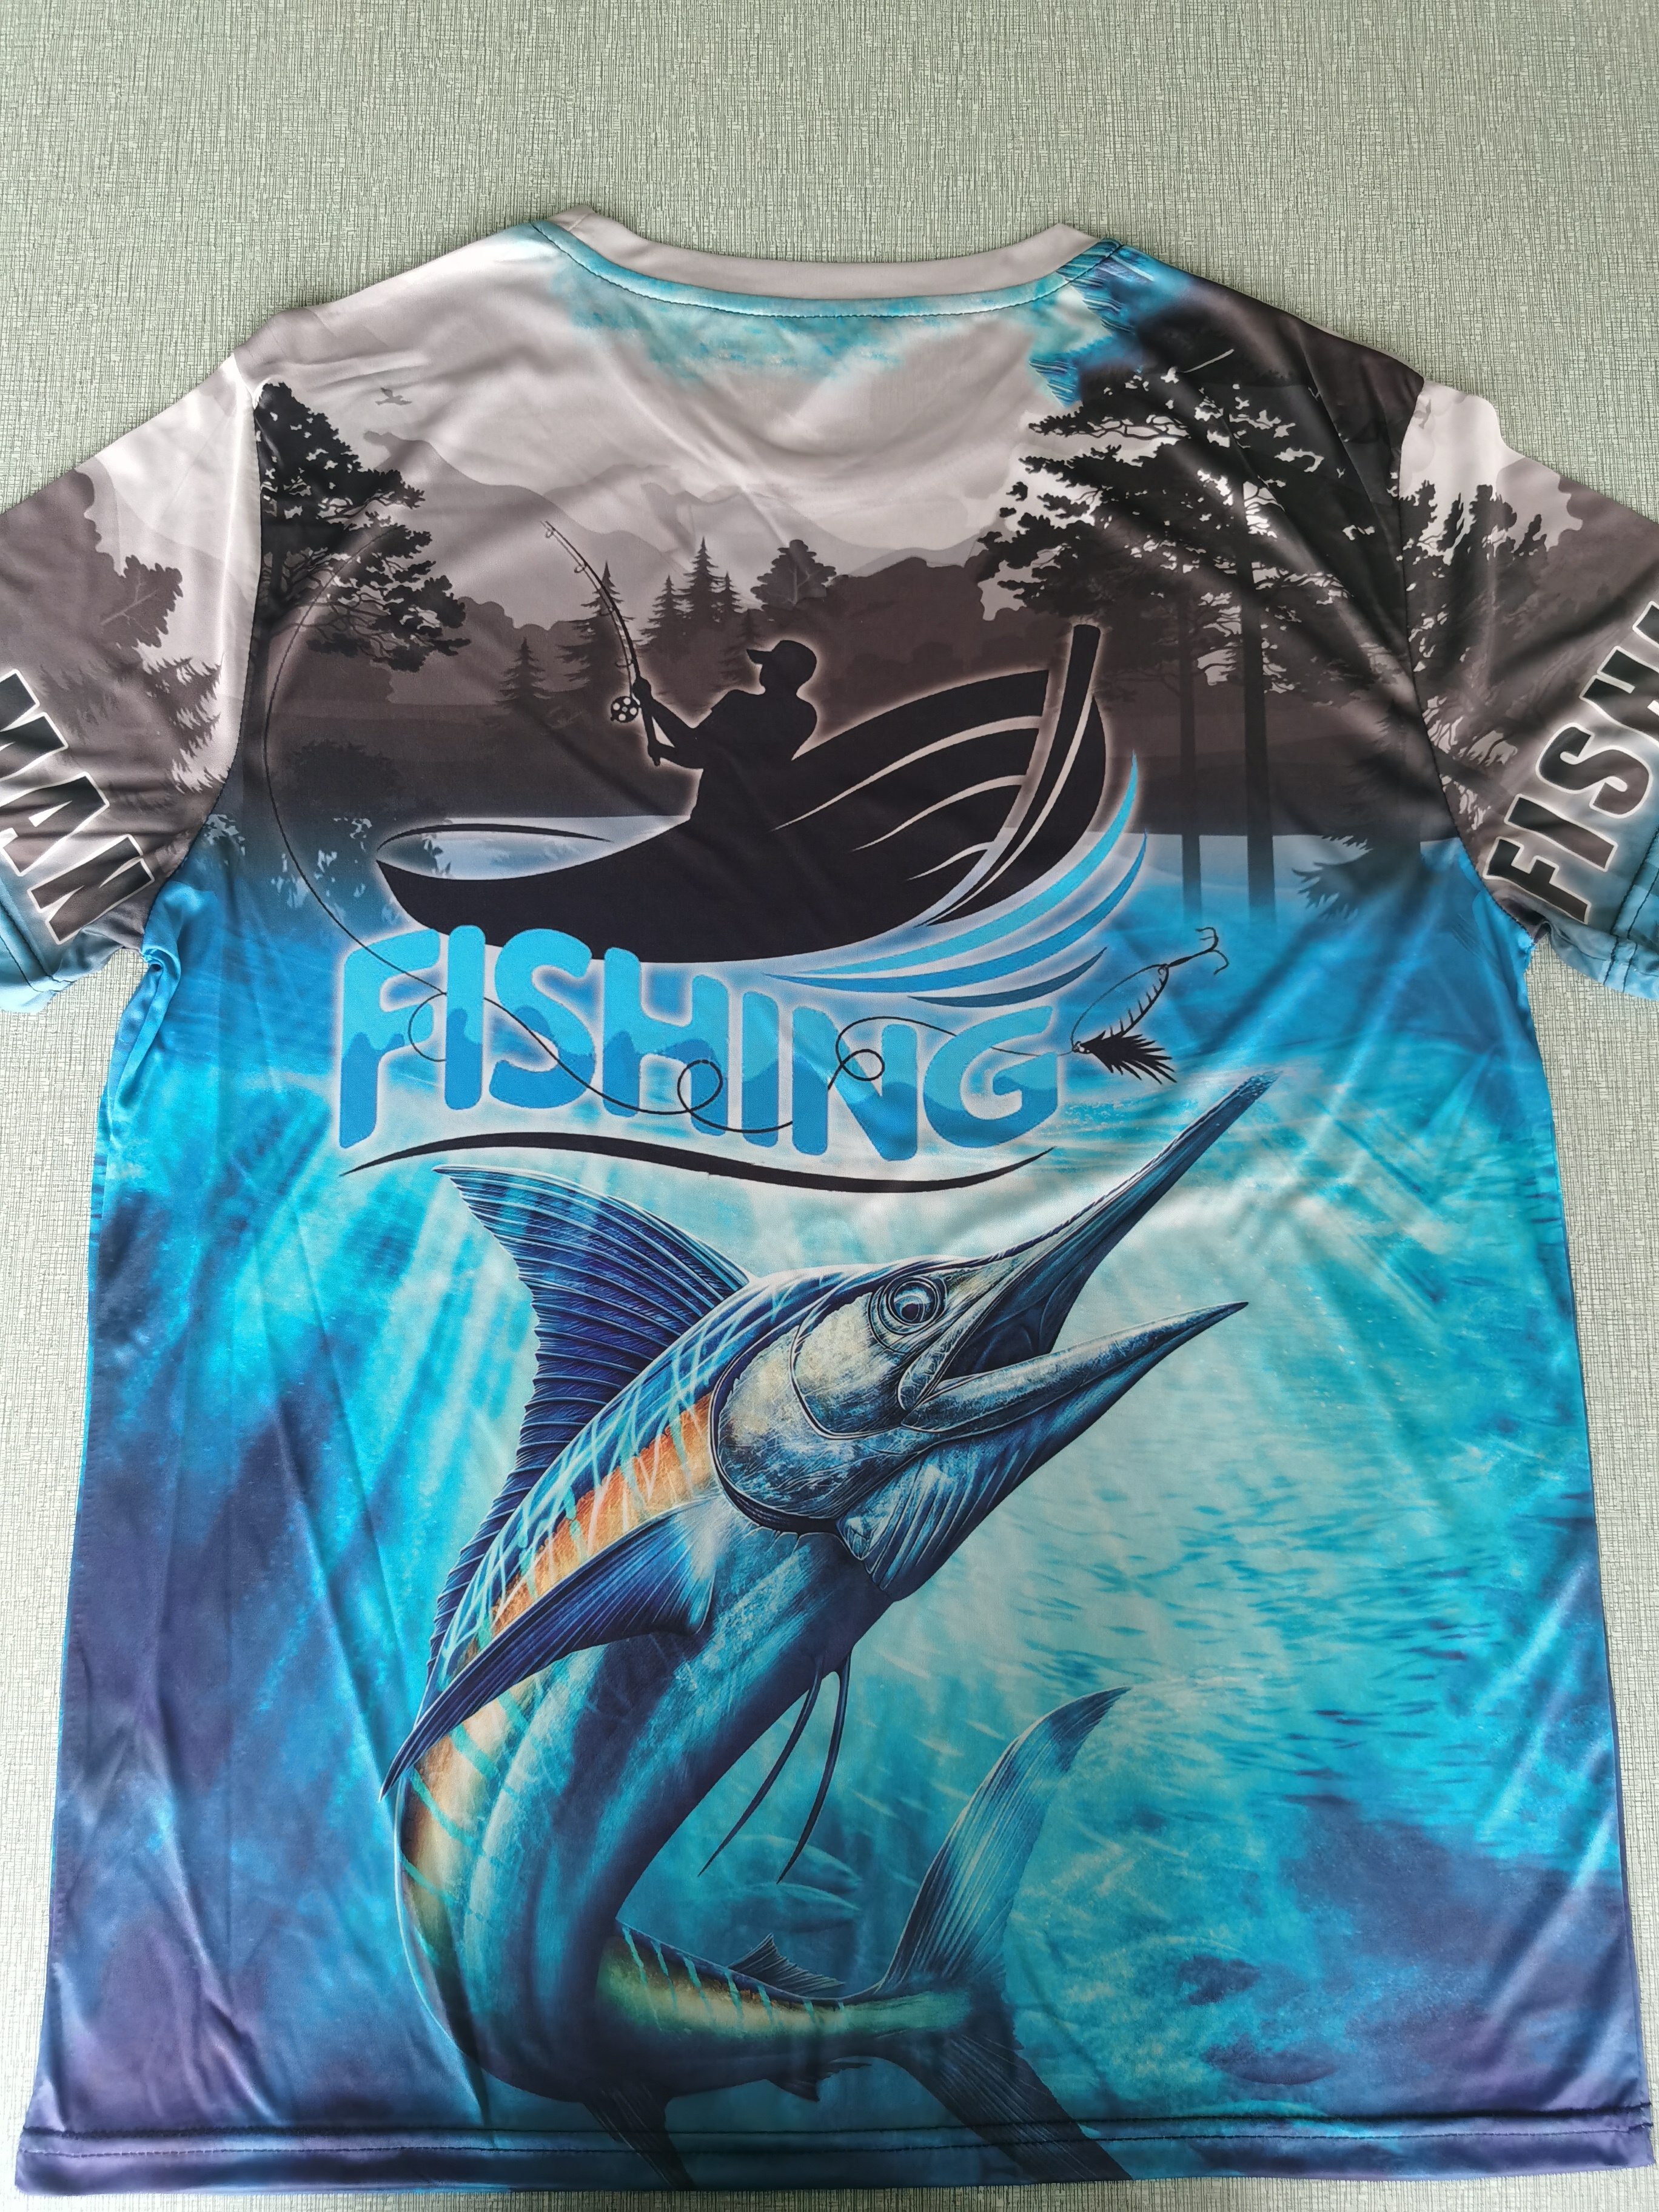 Kids Fishing Tee, Manitoba Fish T-Shirt, Graphic Tee, Screenprint, Blue T-Shirt, Grey T-Shirt, Fish Design